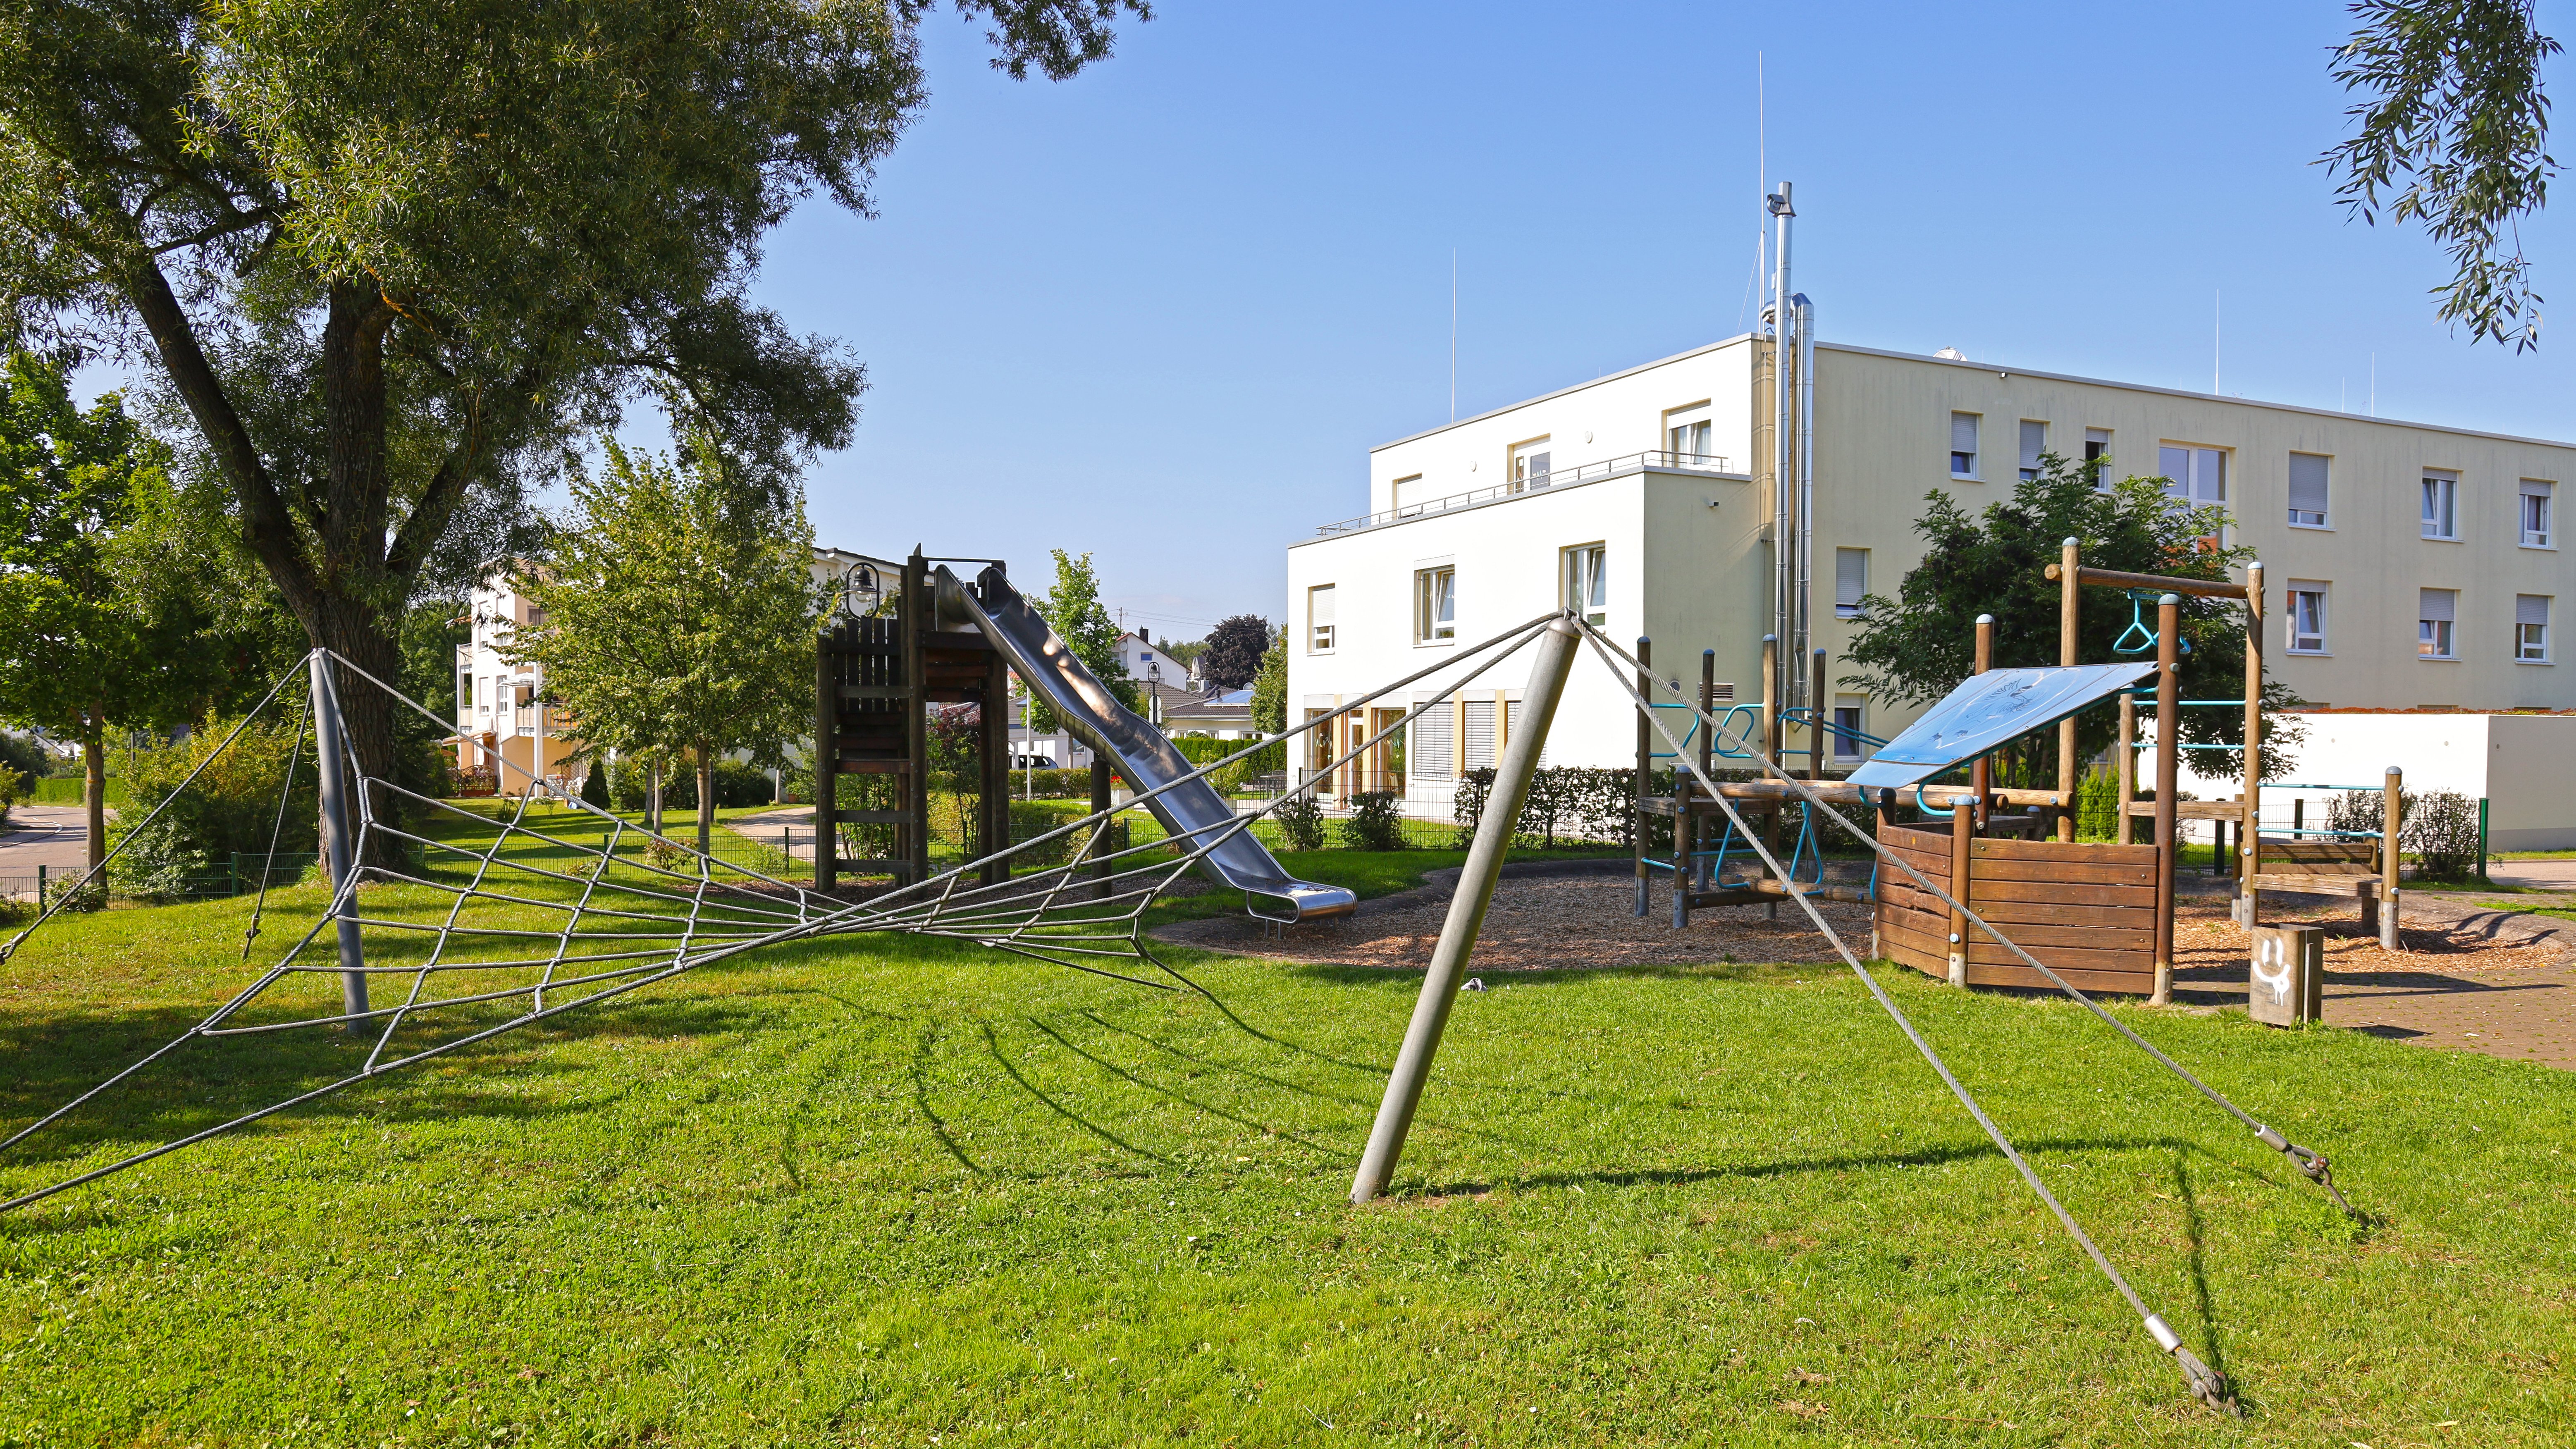 Foto vom Spielplatz Gemmingenhalle mit verschiedenen Spielgeräten wie eine Rutsche und Klettergerät sind zu sehen.